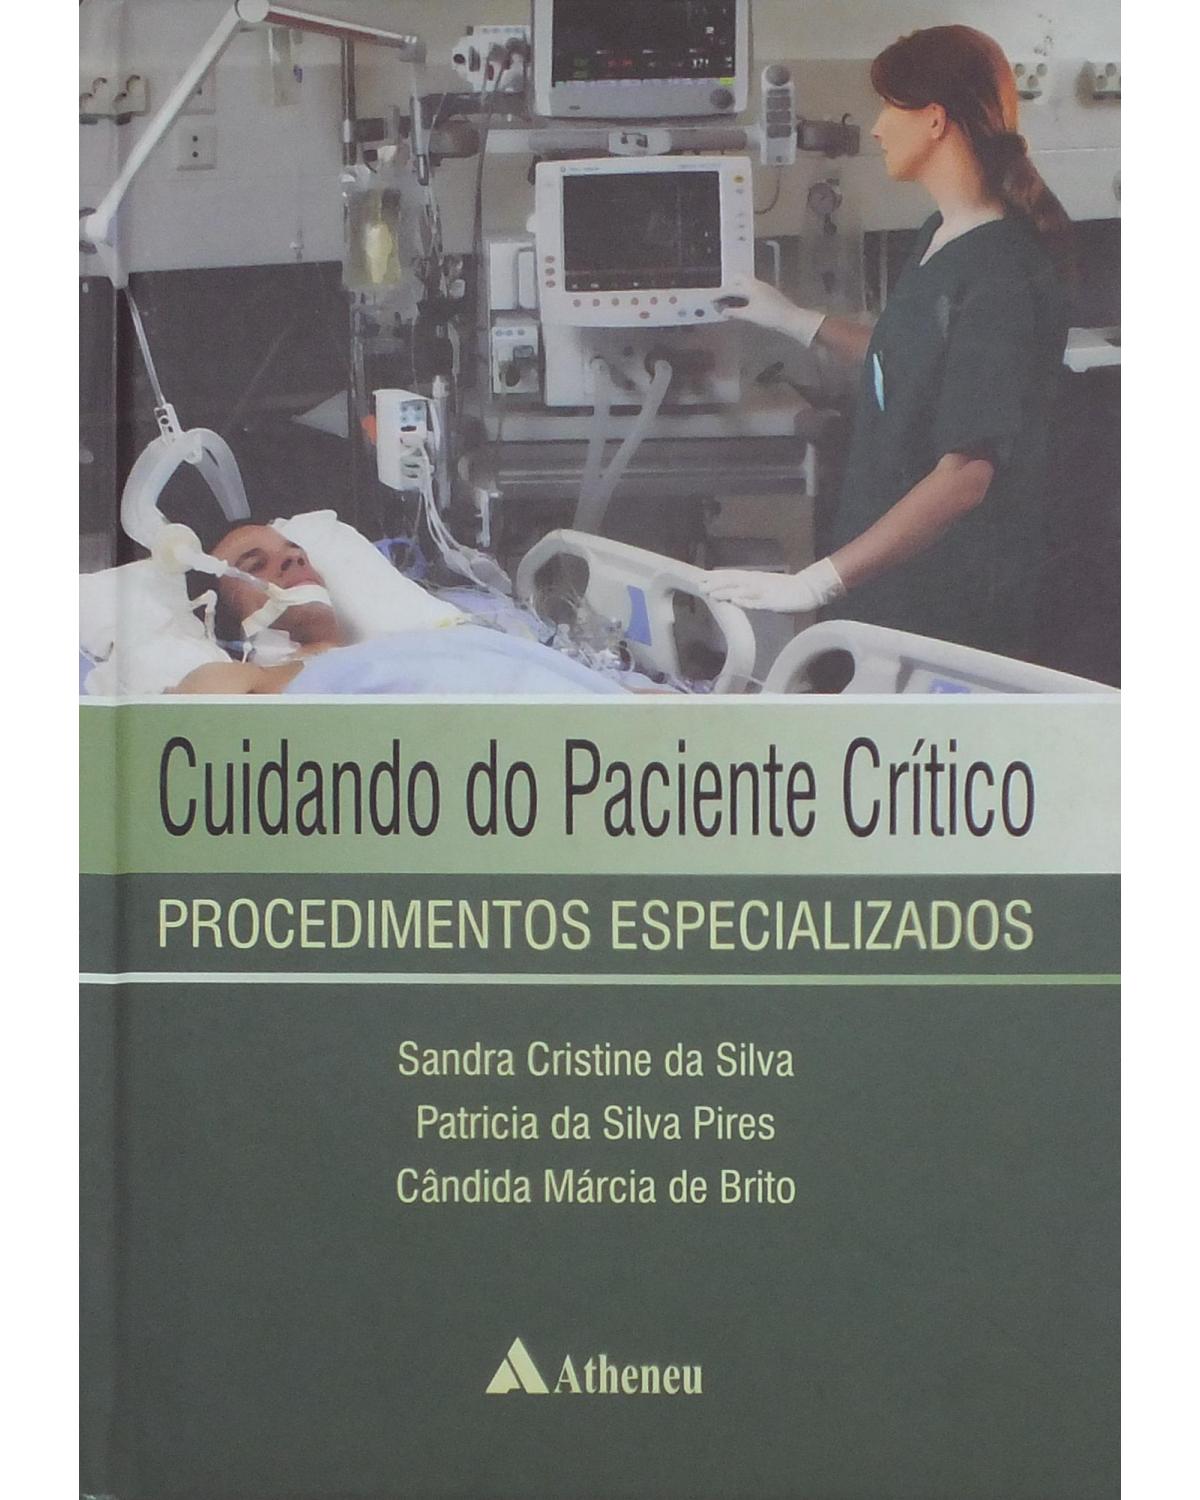 Cuidando do paciente crítico - procedimentos especializados - 1ª Edição | 2013